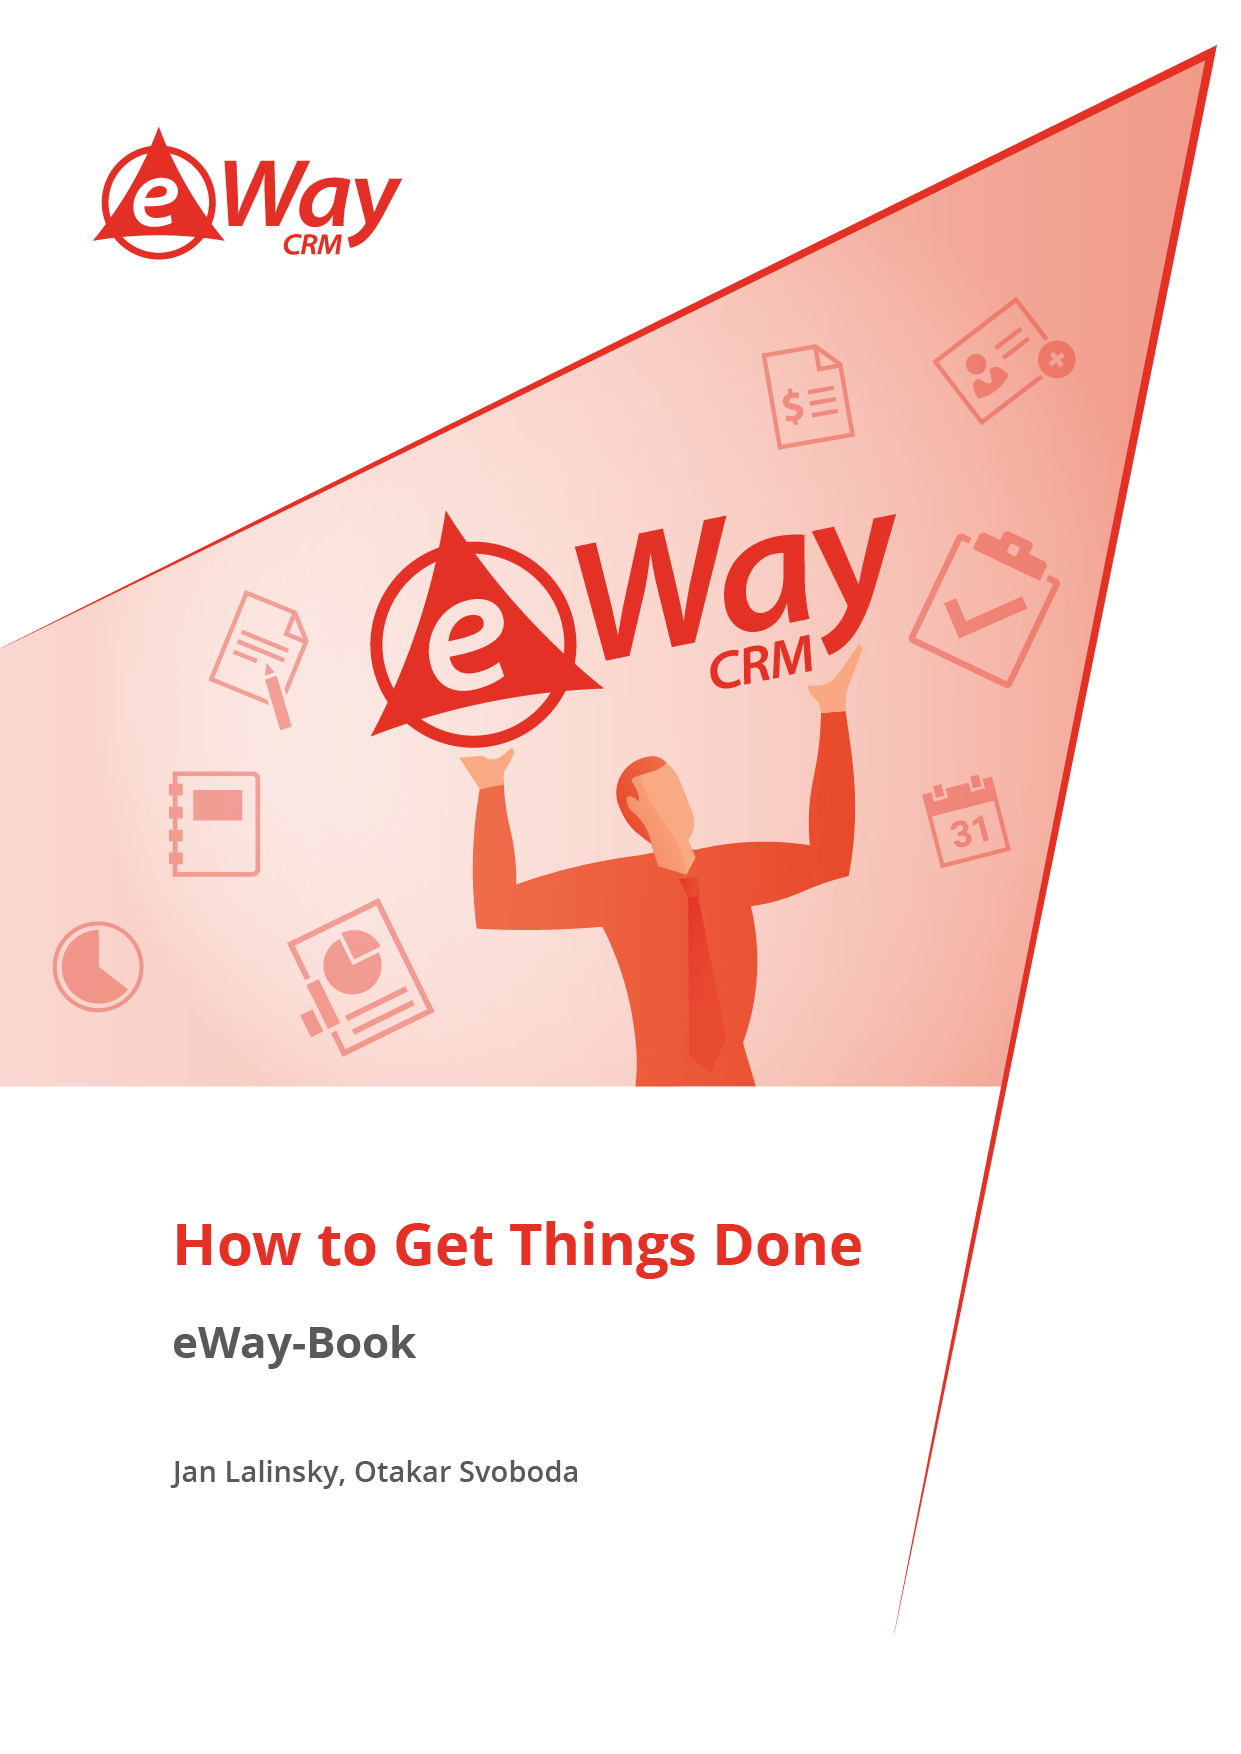 eWay-Book GTD